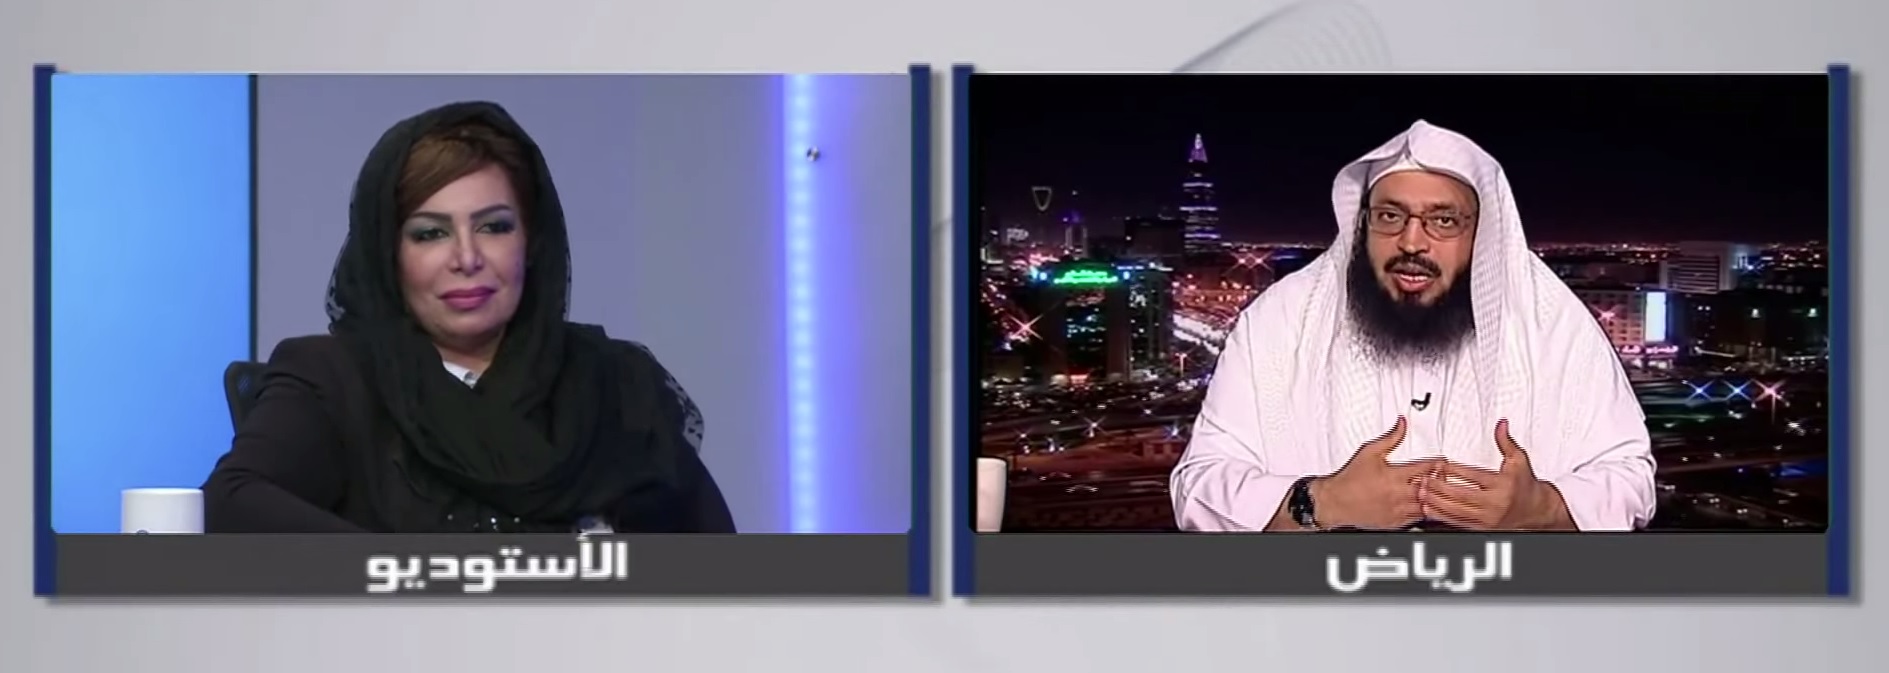 סועאד אל-שמרי בעימות טלוויזיוני עם אחד ממבקריה (צילום מסך: יוטיוב)